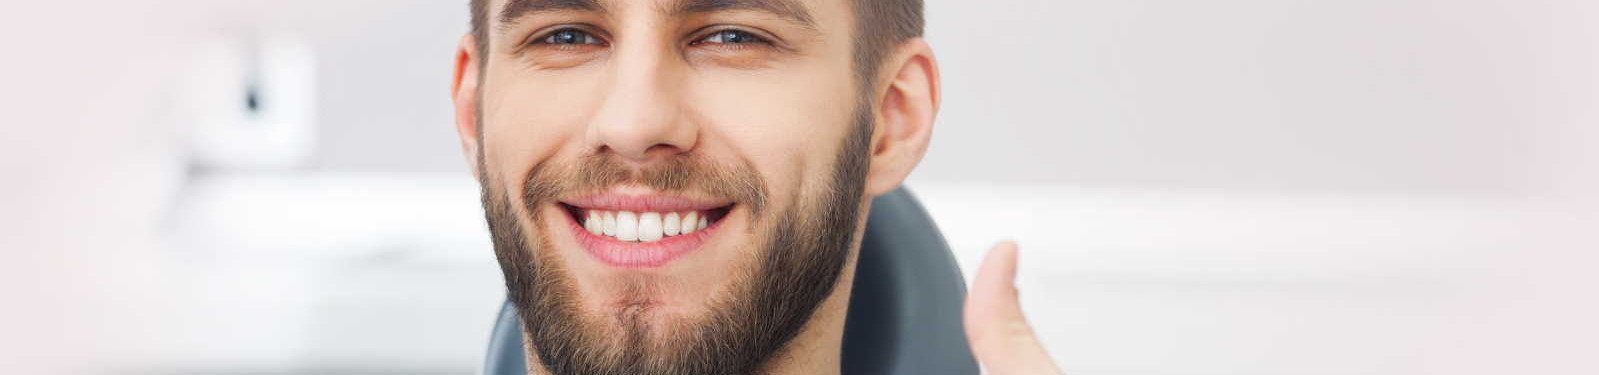 Zahnarztangst Haidhausen | Dentalphobie Dr. Voll hilft